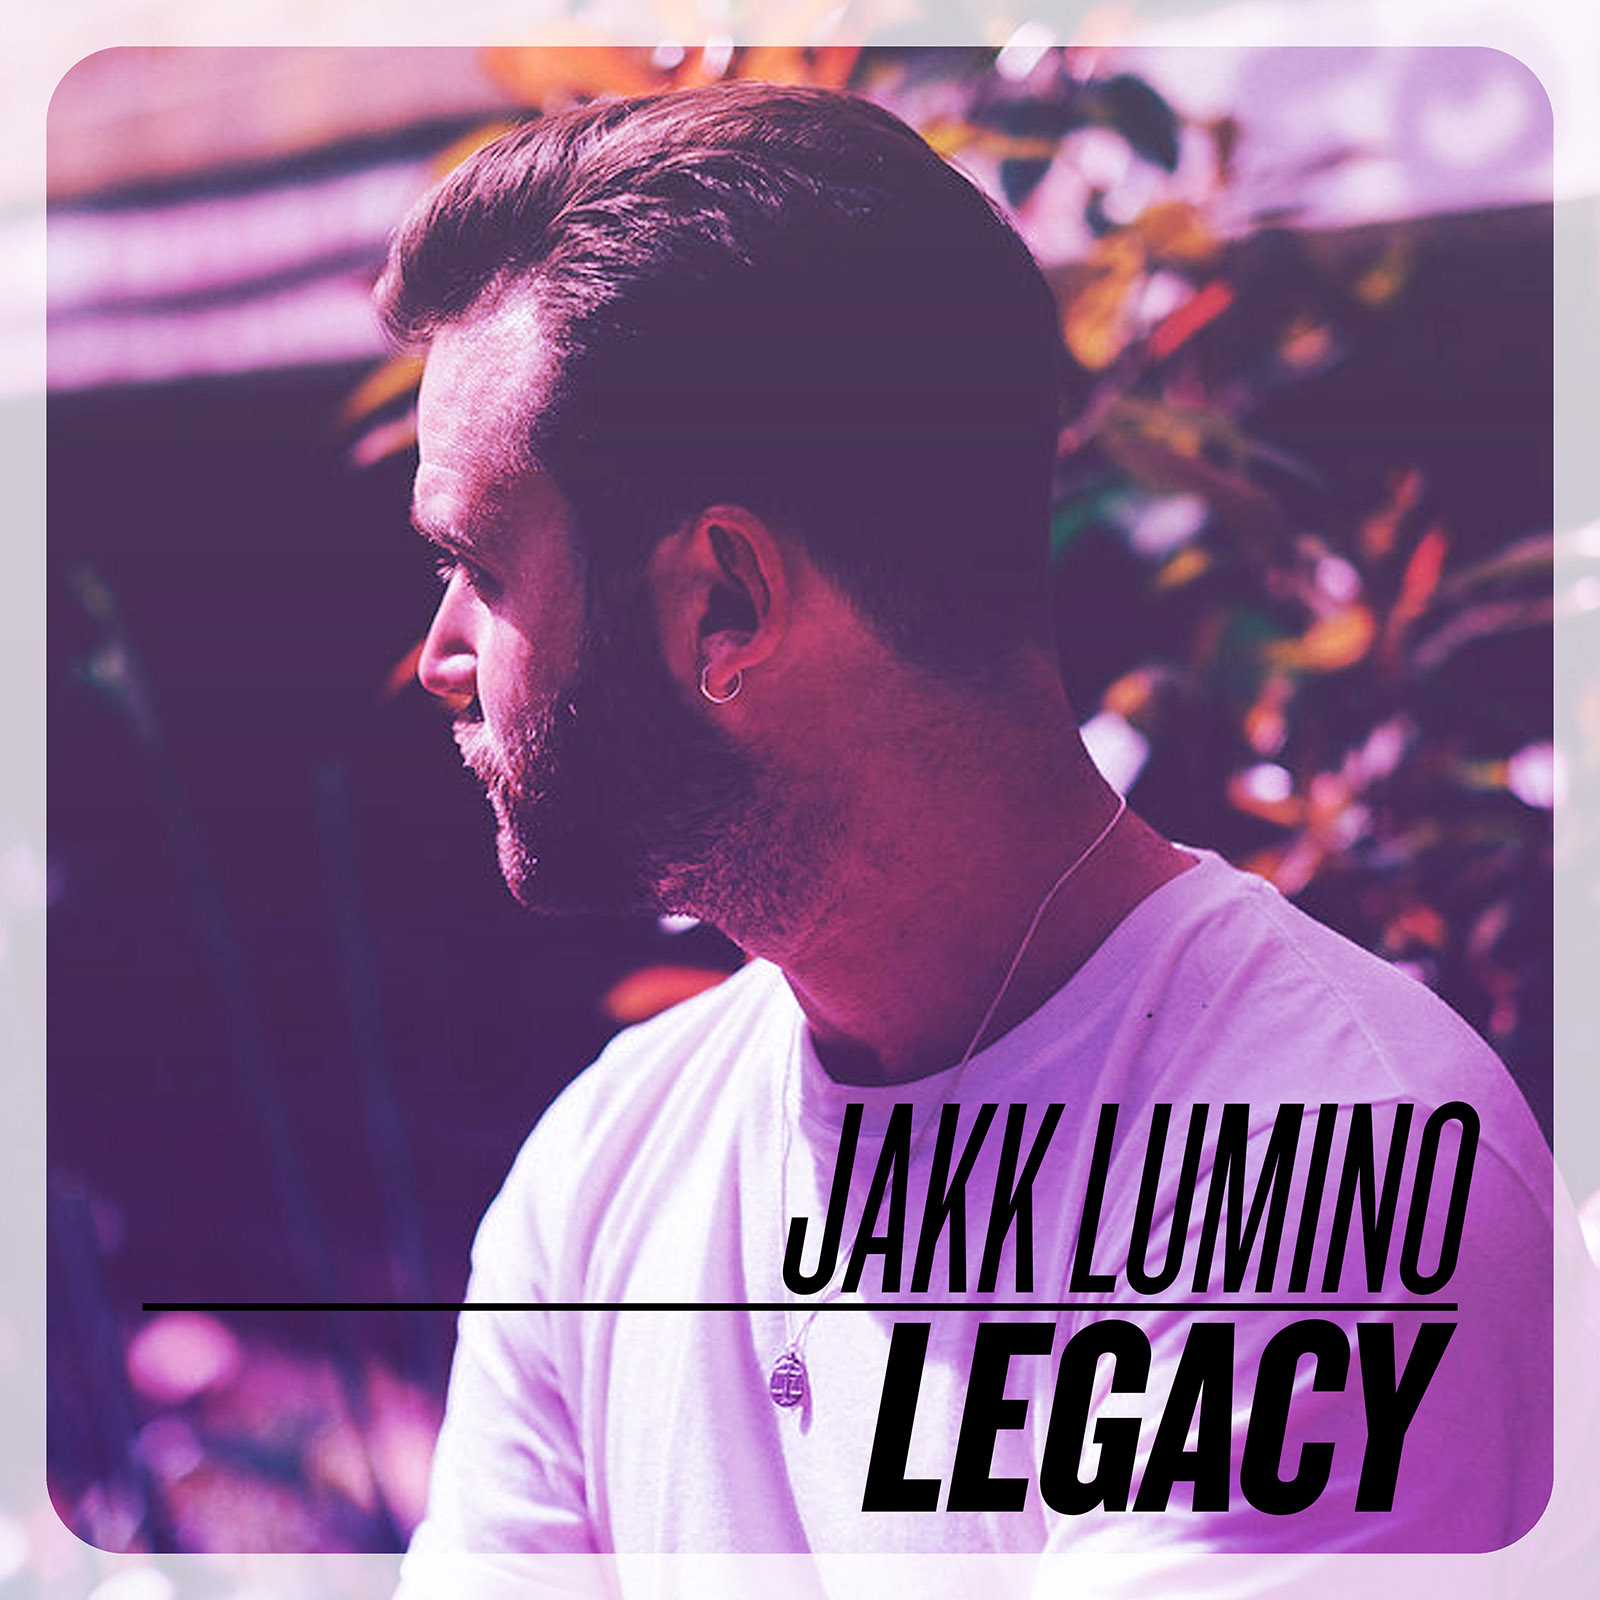 Jakk Lumino - ”Legacy”